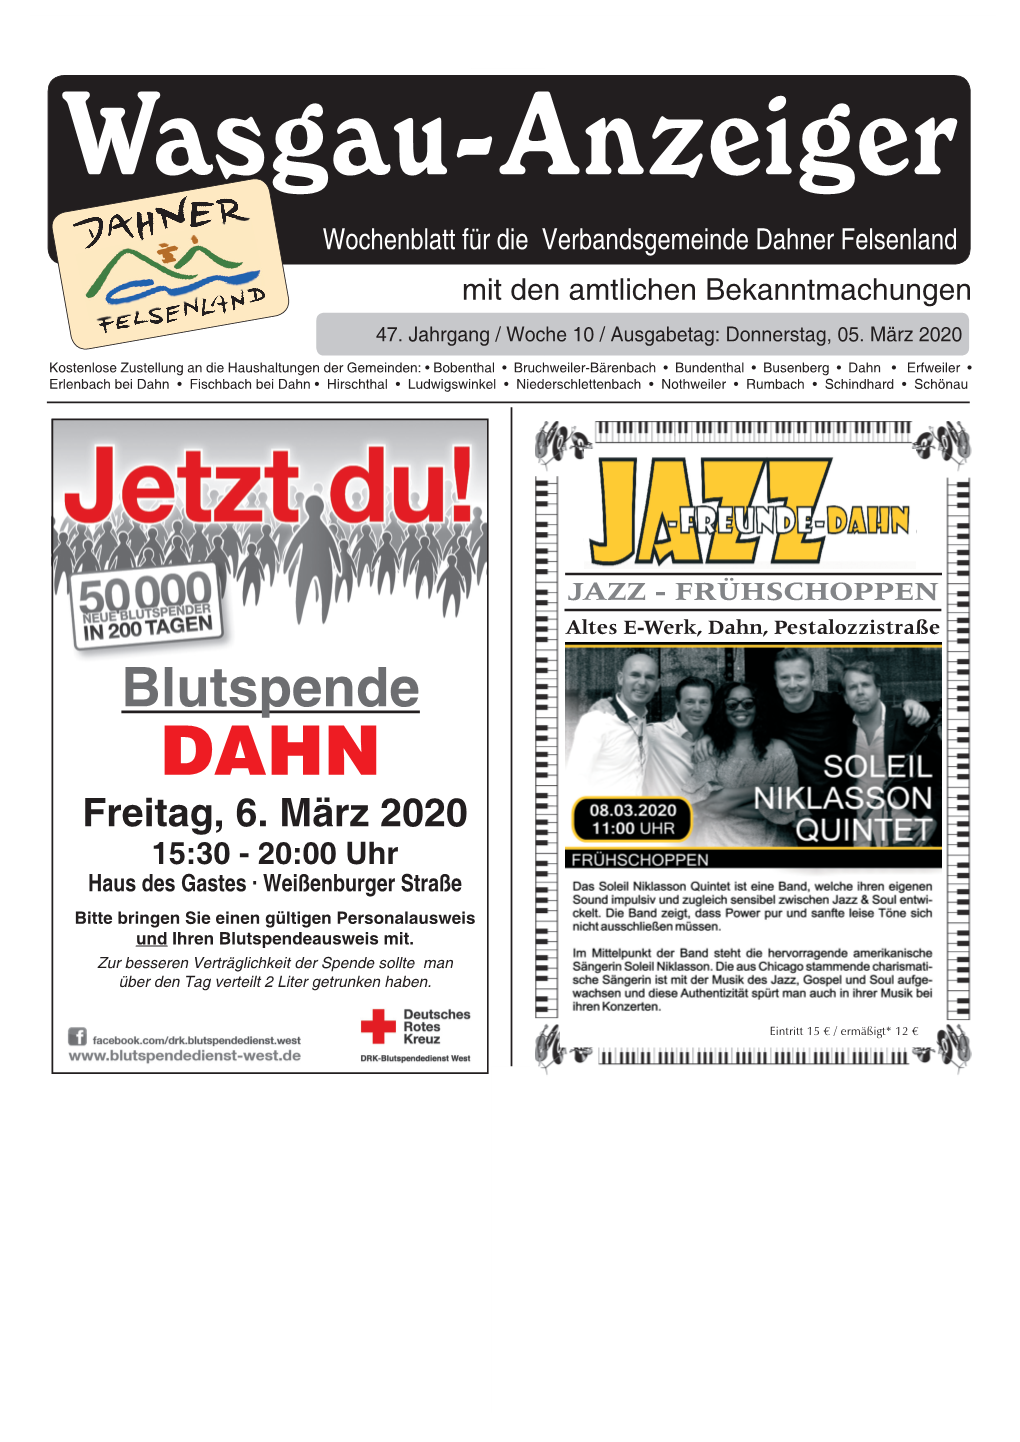 Wasgau-Anzeiger« 05. März 2020 1 Wasgau-Anzeiger Wochenblatt Für Die Verbandsgemeinde Dahner Felsenland Mit Den Amtlichen Bekanntmachungen 47